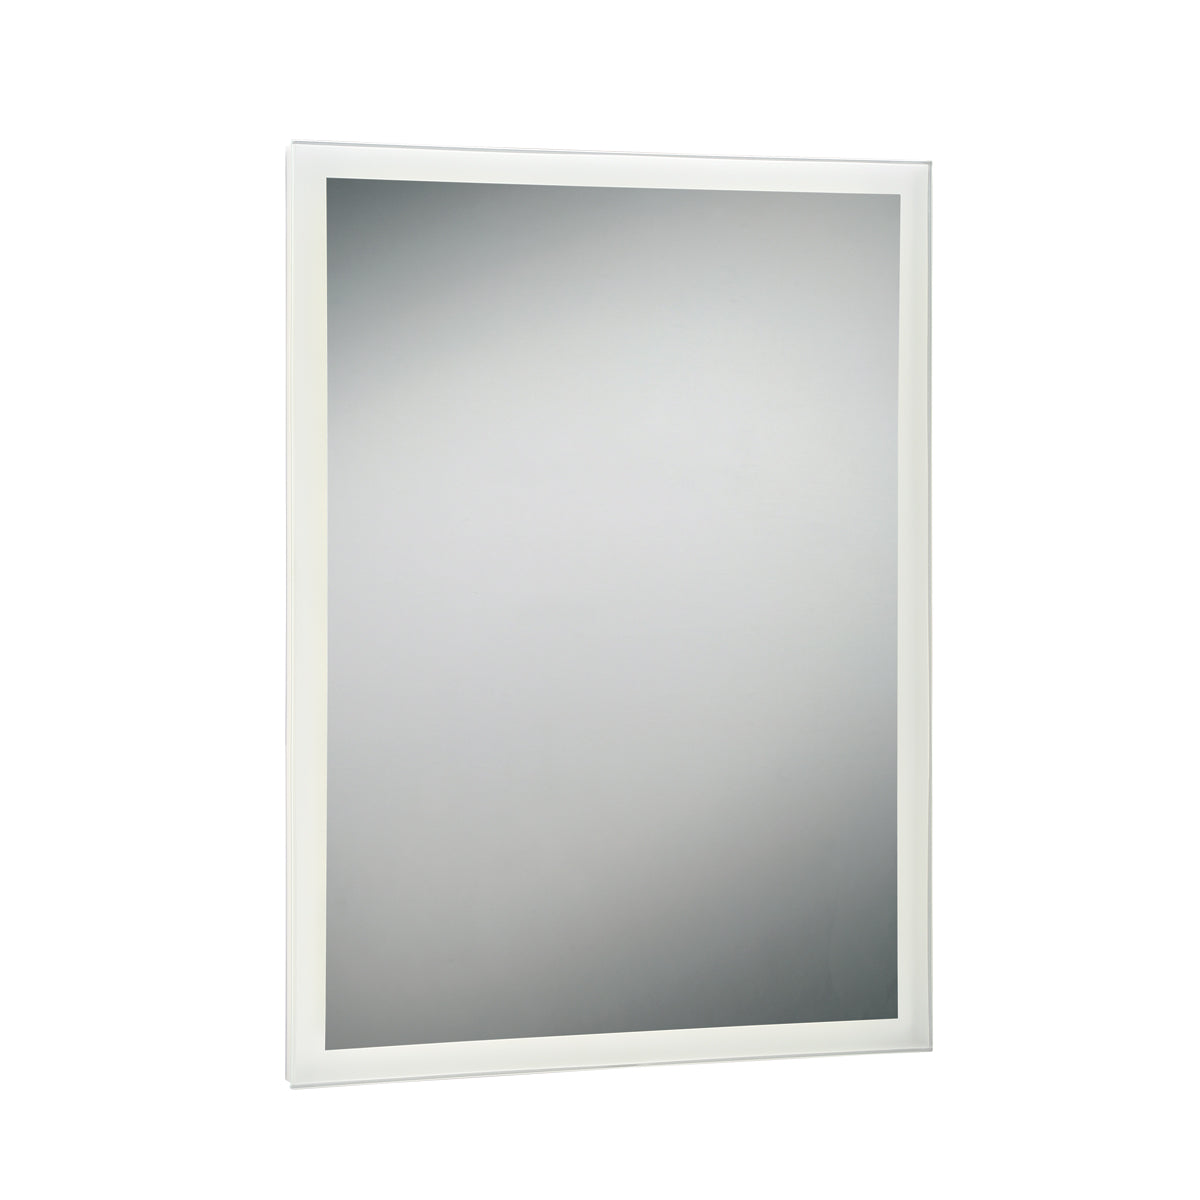 BENJI Mirror - 29105-014 INTEGRATED LED | EUROFASE